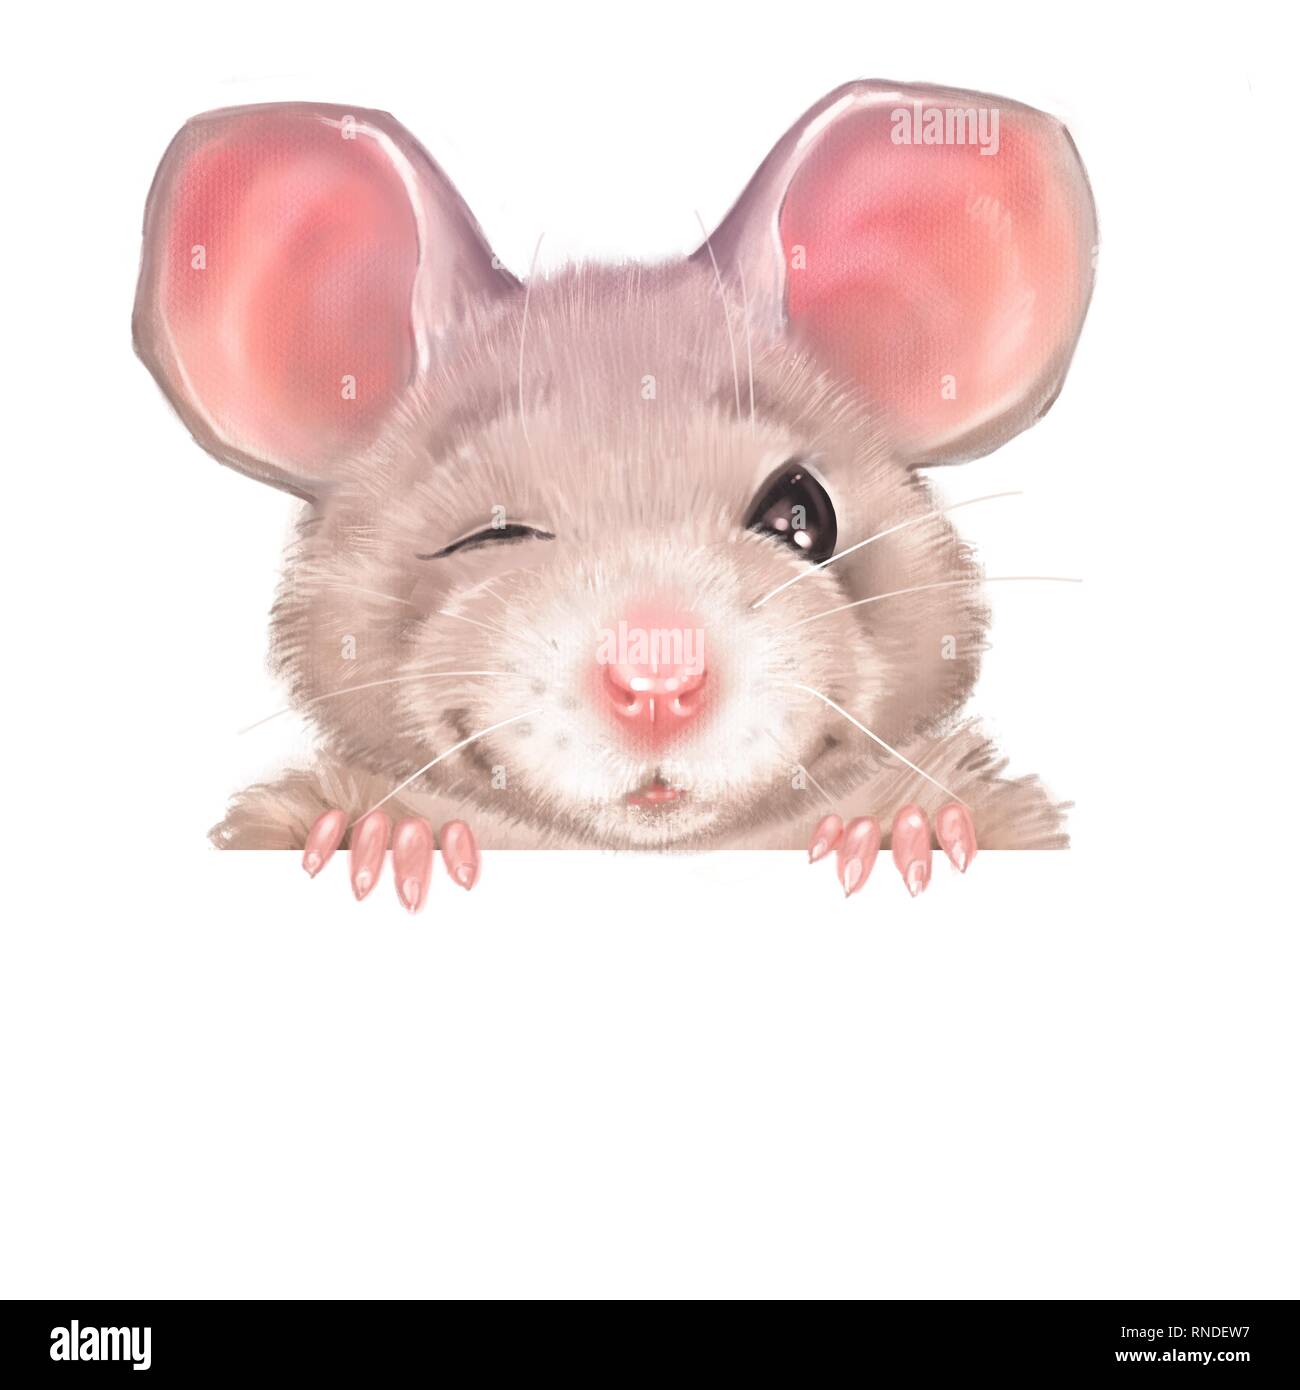 Cute cartoon rat winks Stock Photo